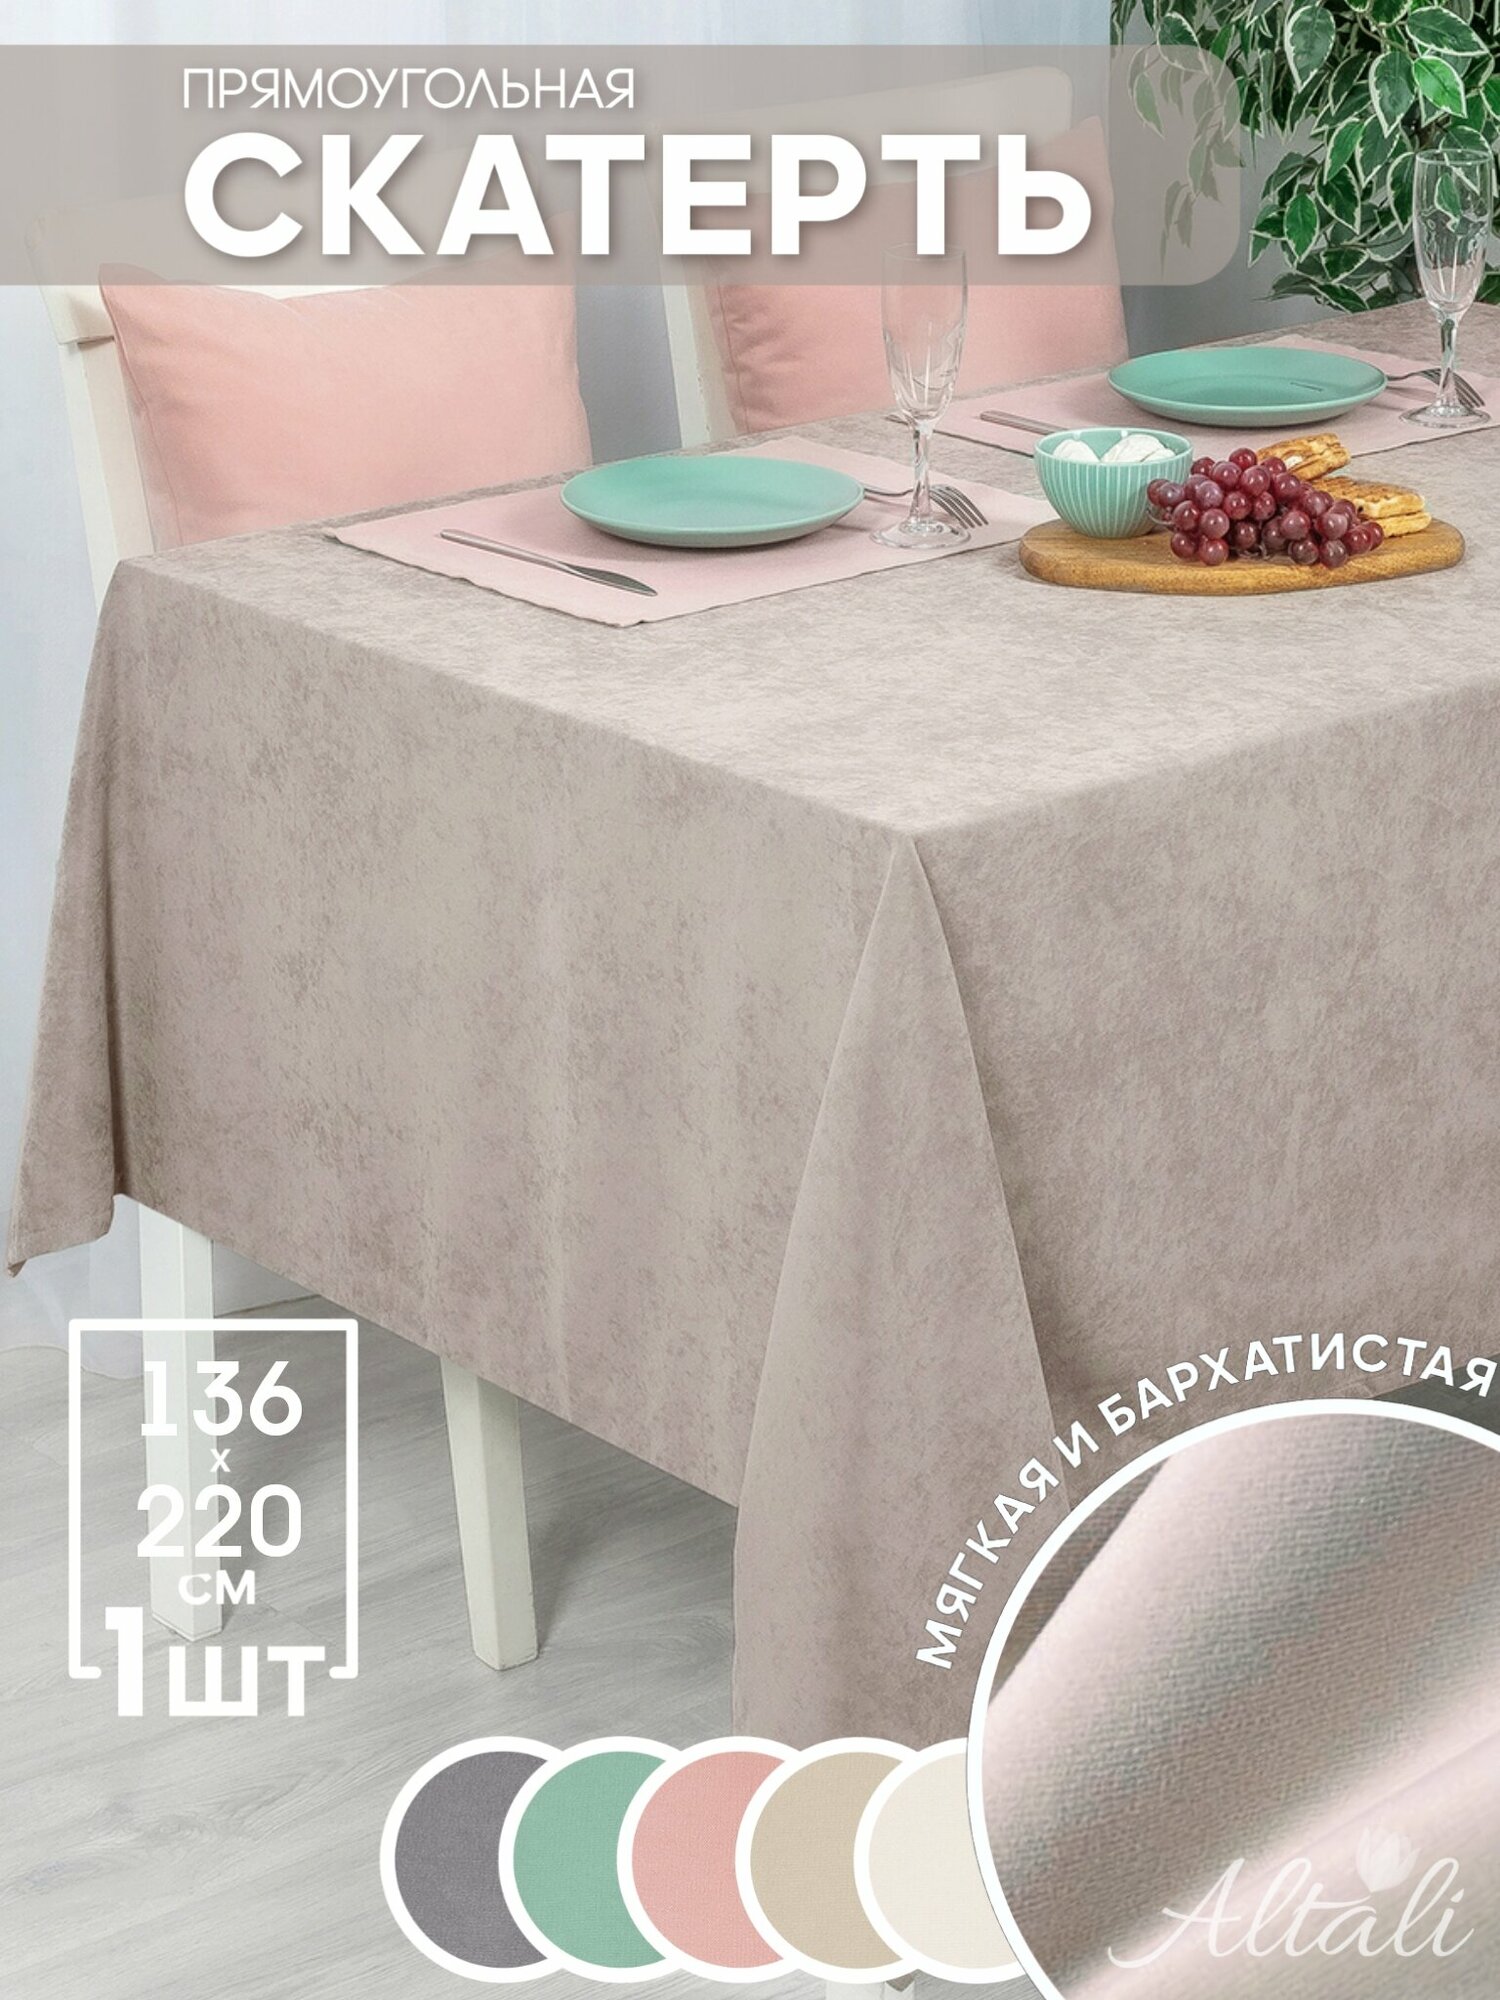 Скатерть кухонная прямоугольная на стол / ткань велюр / для кухни дома дачи /Altali